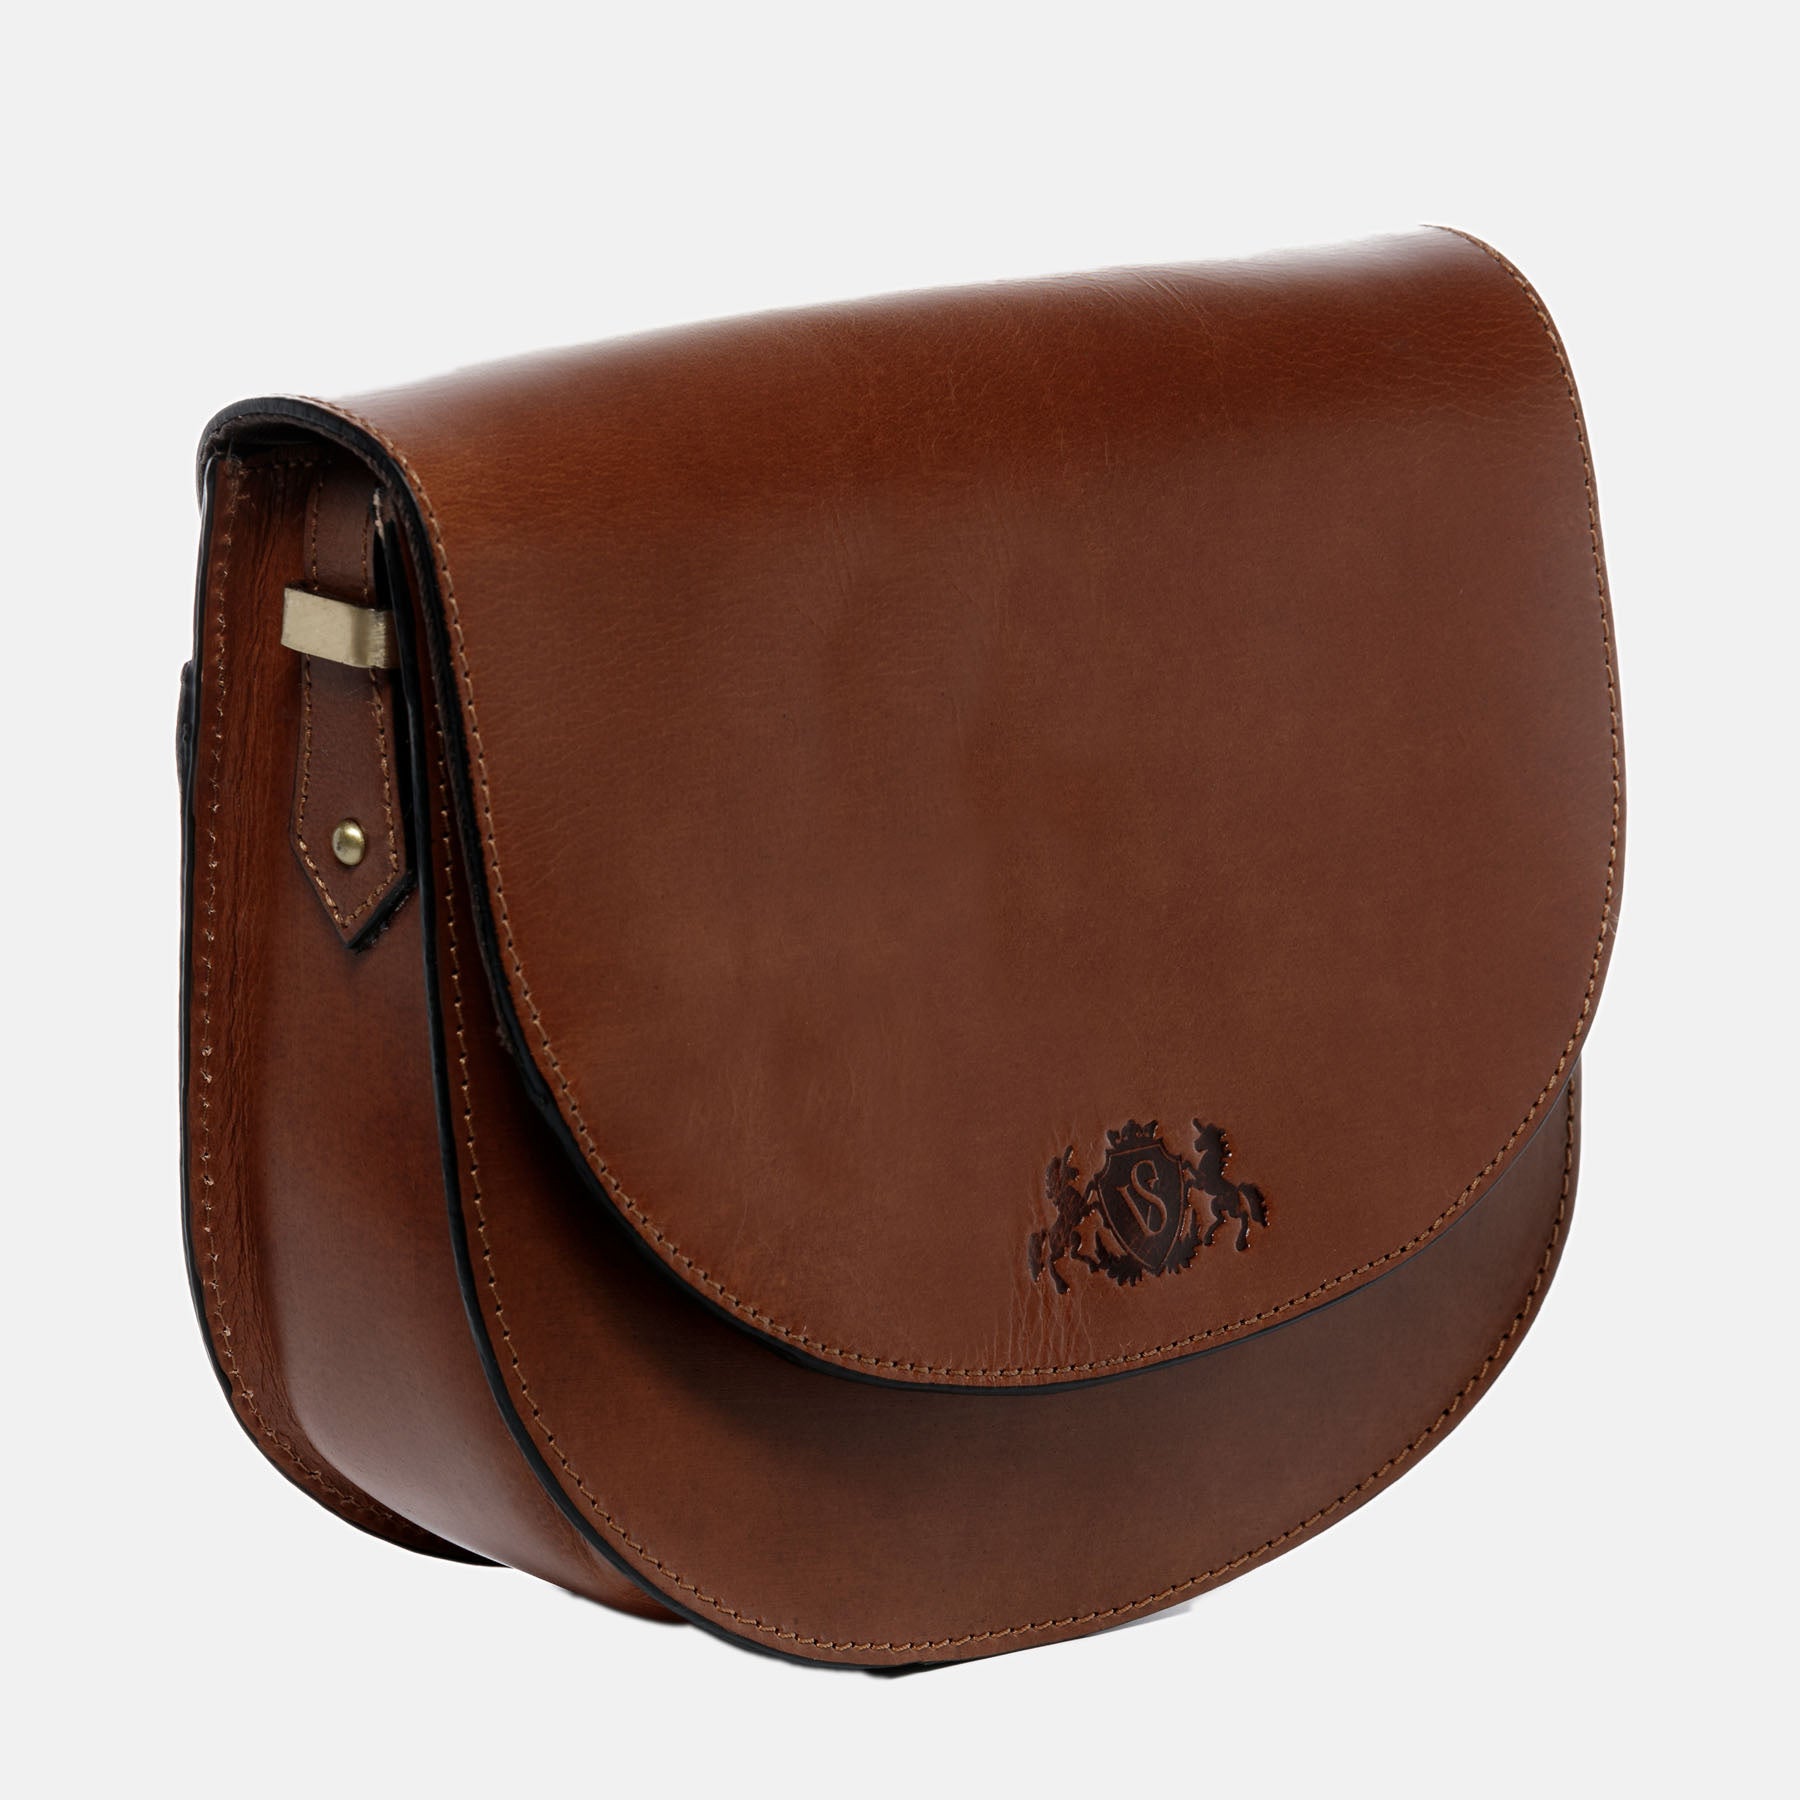 Shoulder bag TRISH saddle leather brown